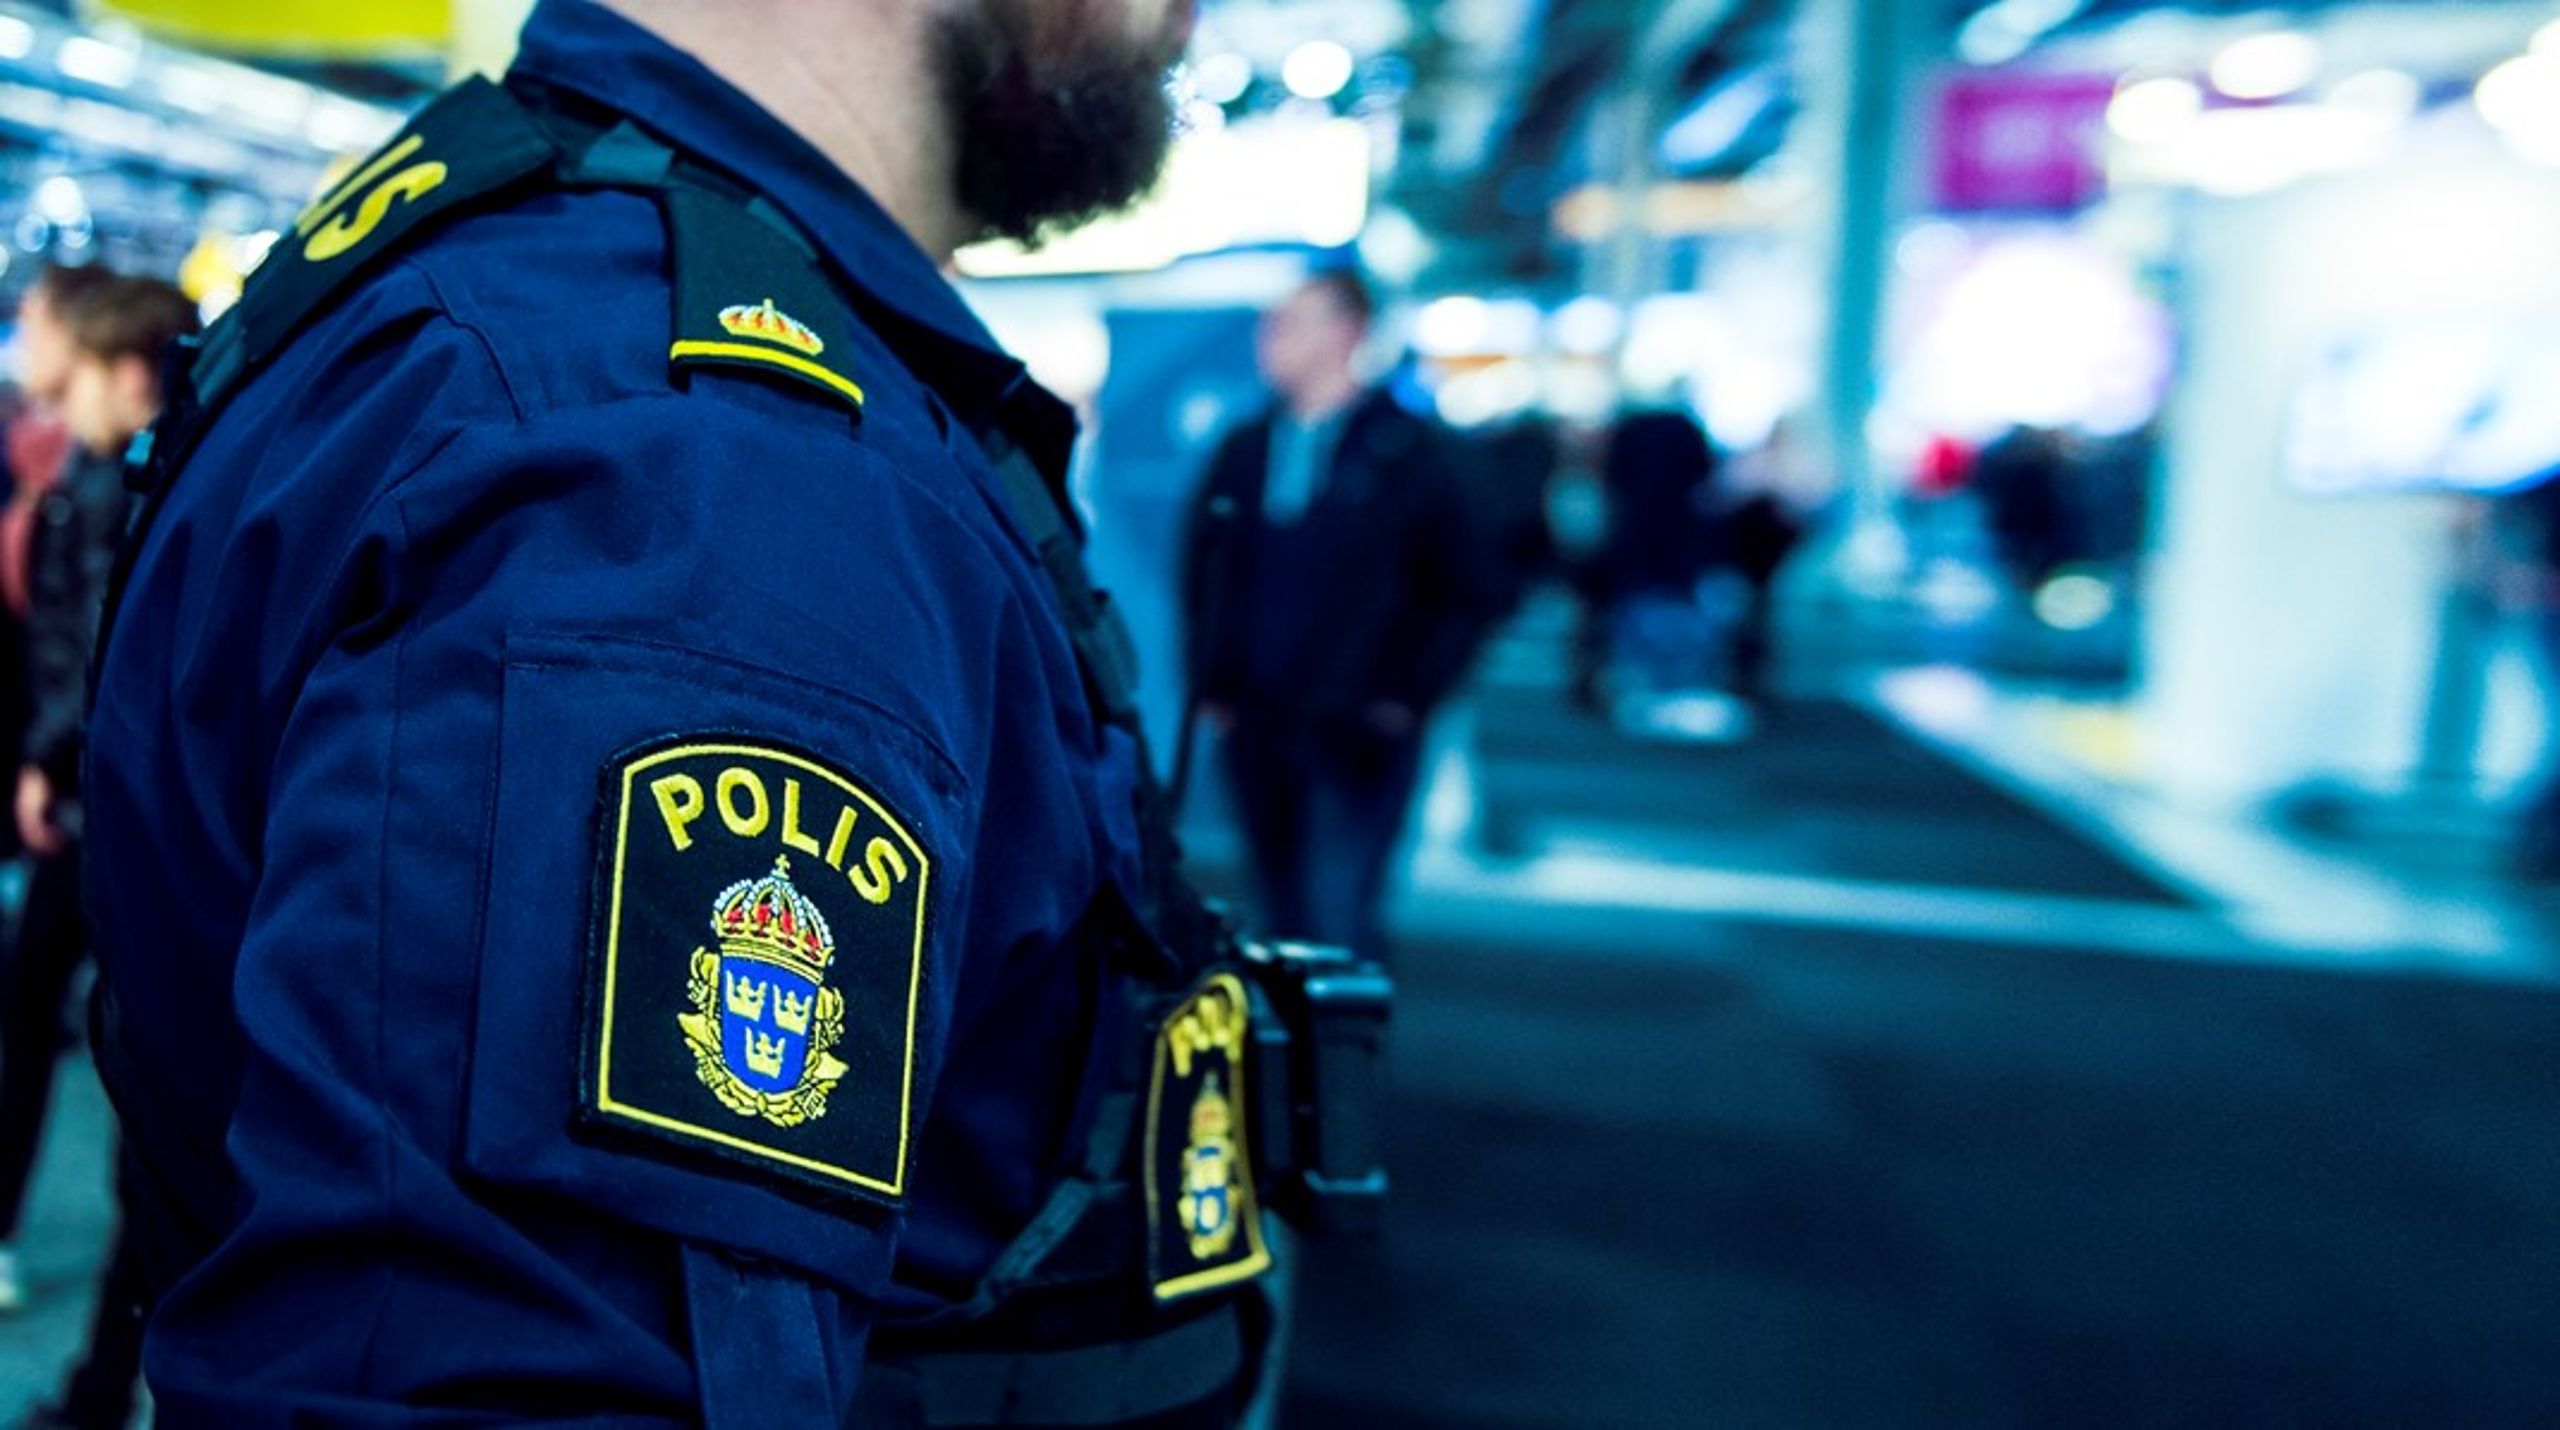 ”KDU Stockholm vill anställa fler poliser som kan jobba med att bekämpa och utreda sexualbrott. Det vill vi med. Det är bara i en borgerlig parallell verklighet som det är antingen det ena eller det andra som gäller.”